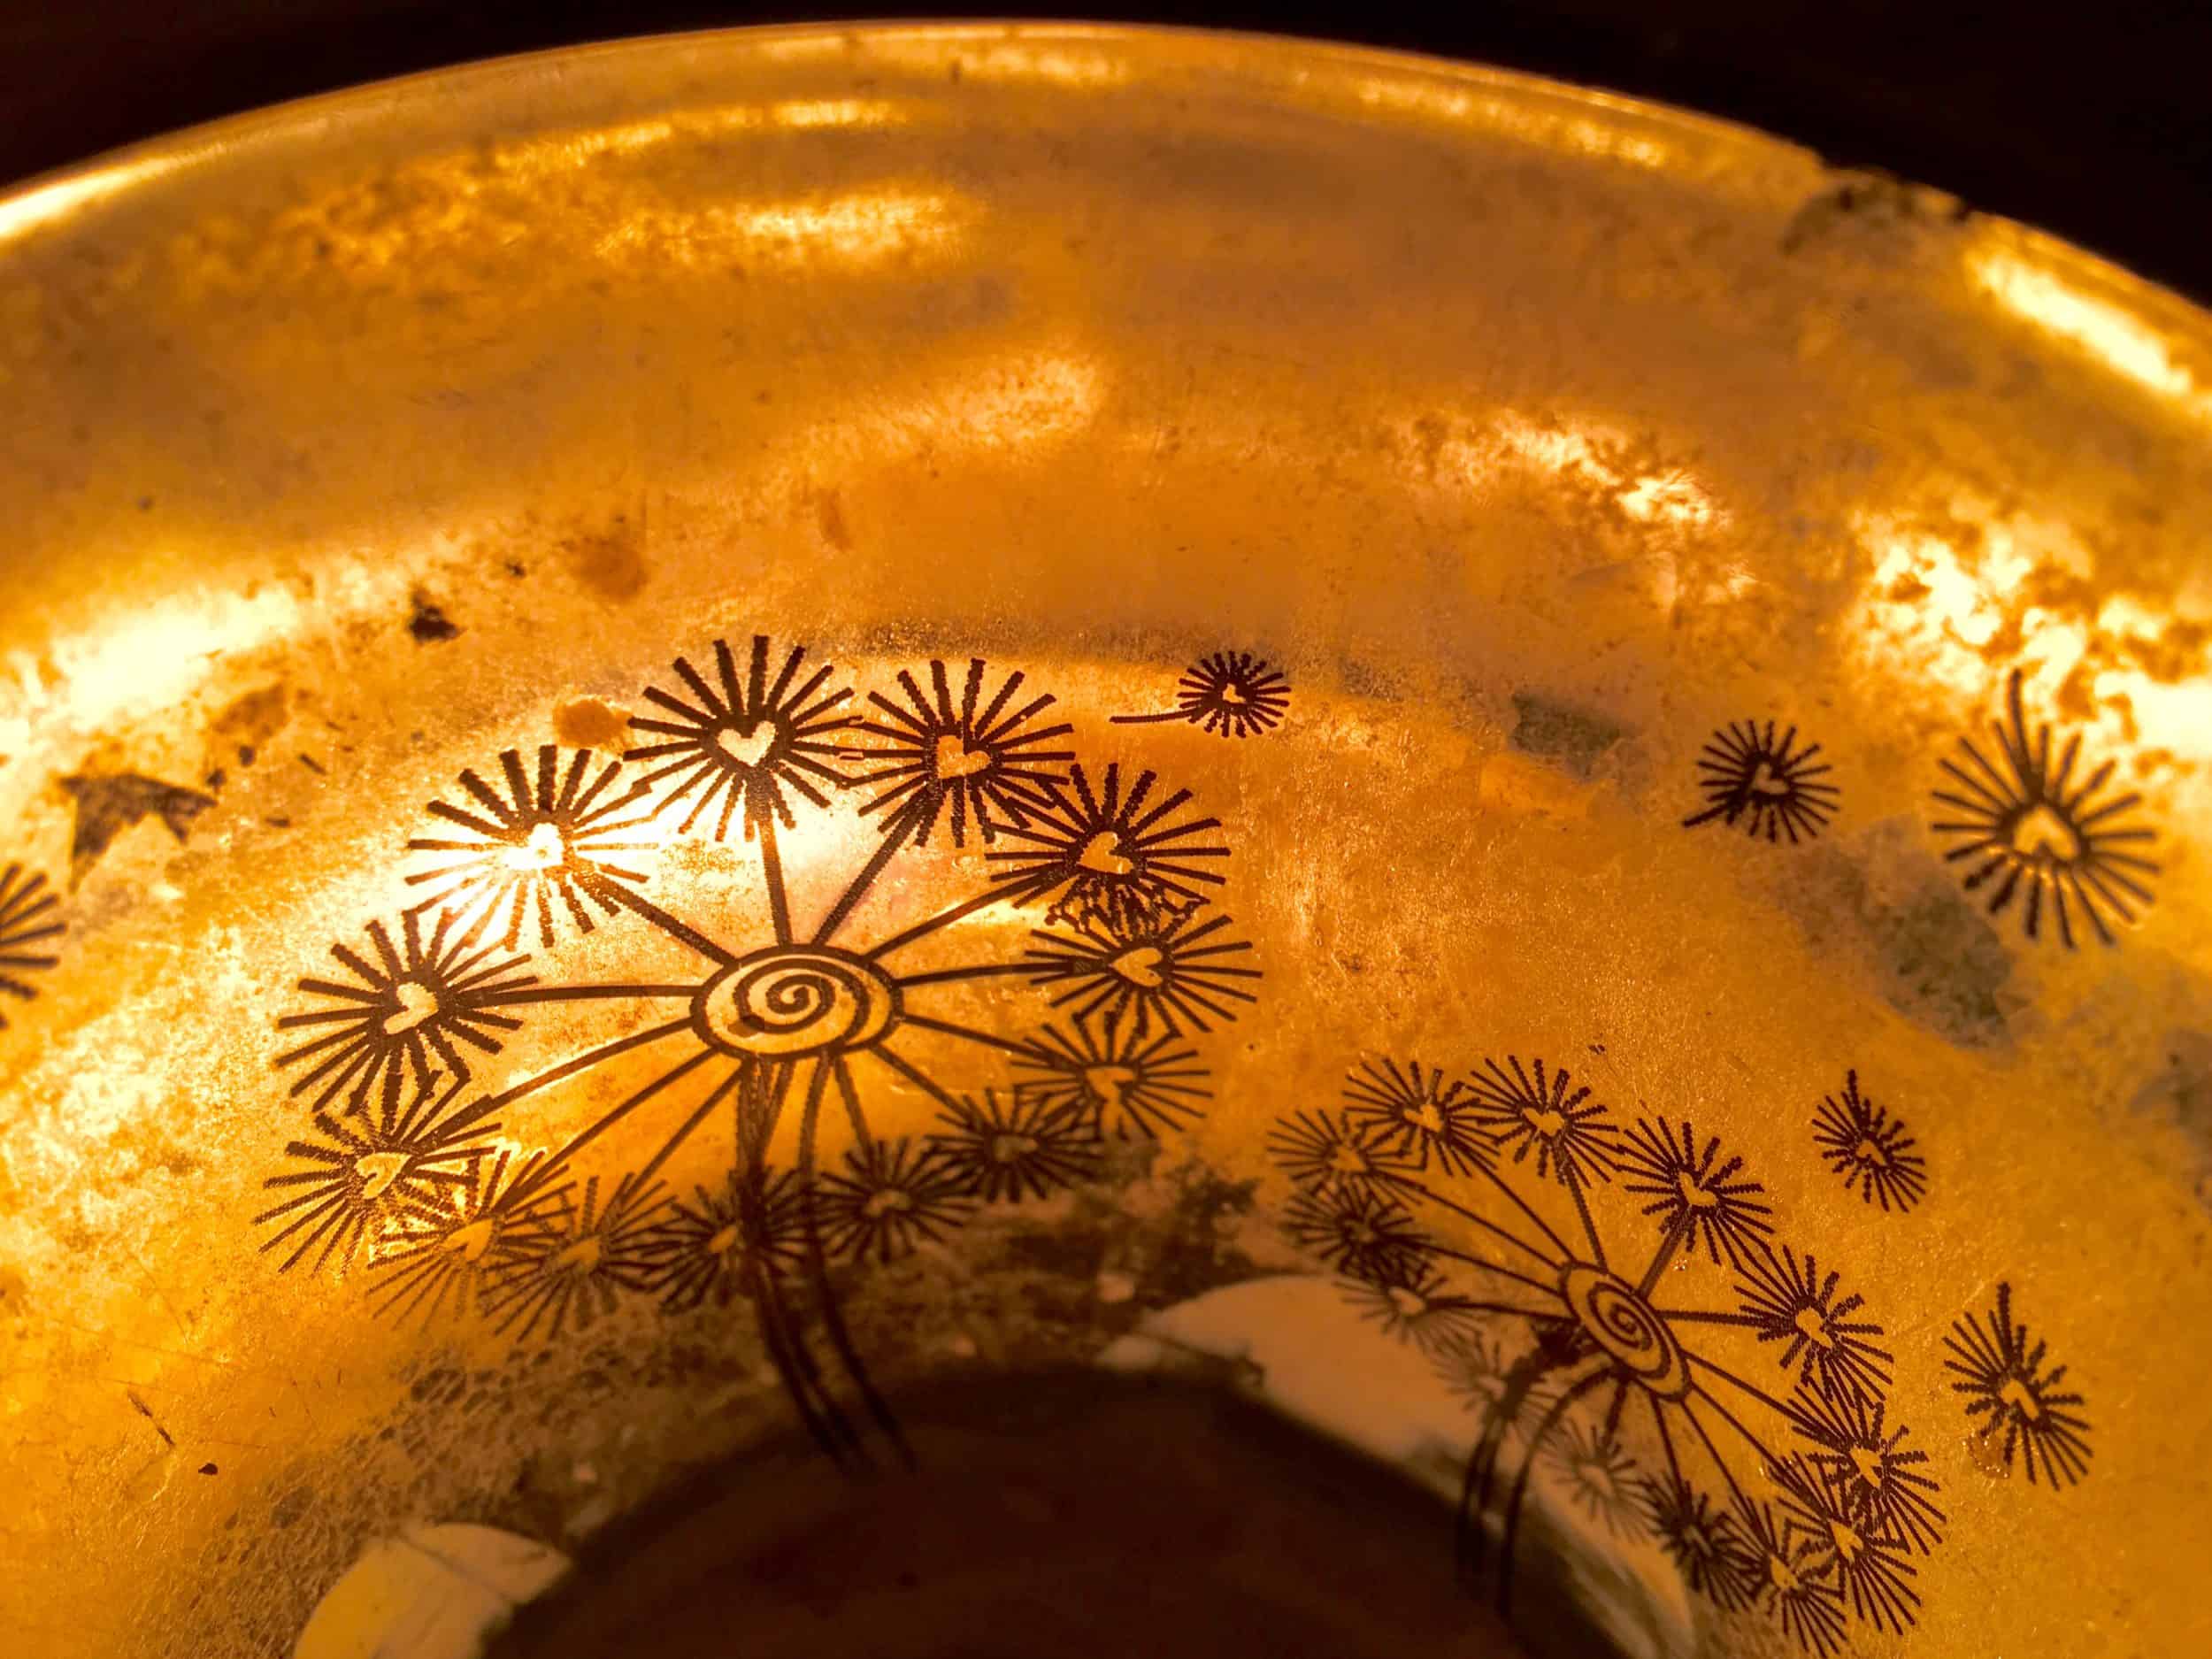 Kerzenschein im Gefäß mit goldenem Blumenmuster